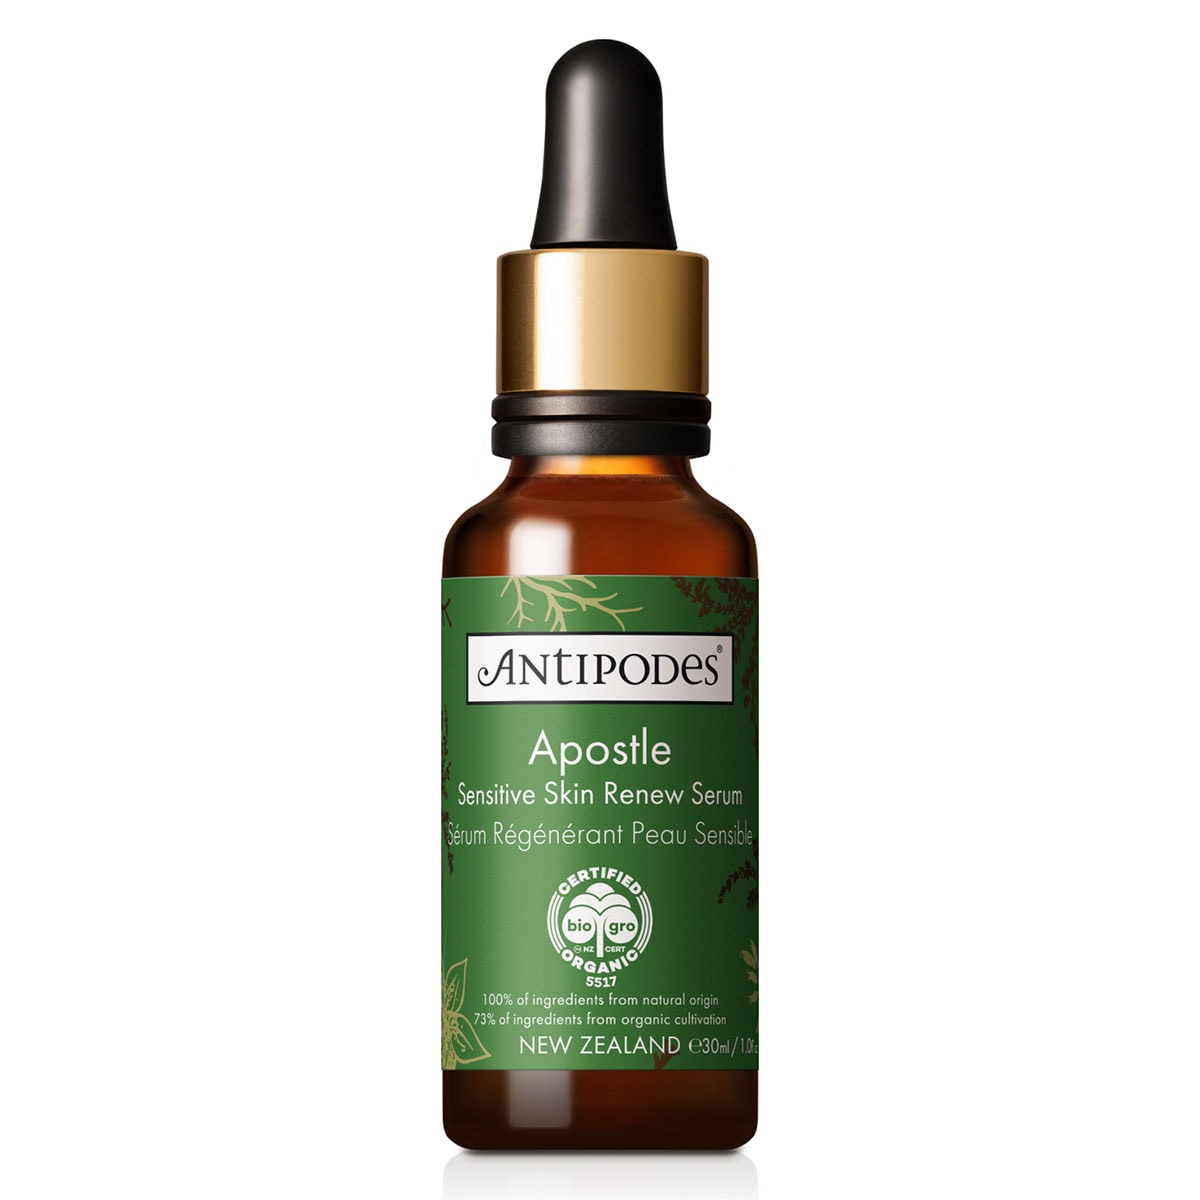 Antipodes Apostle Sensitive Skin Renew Serum 30ml